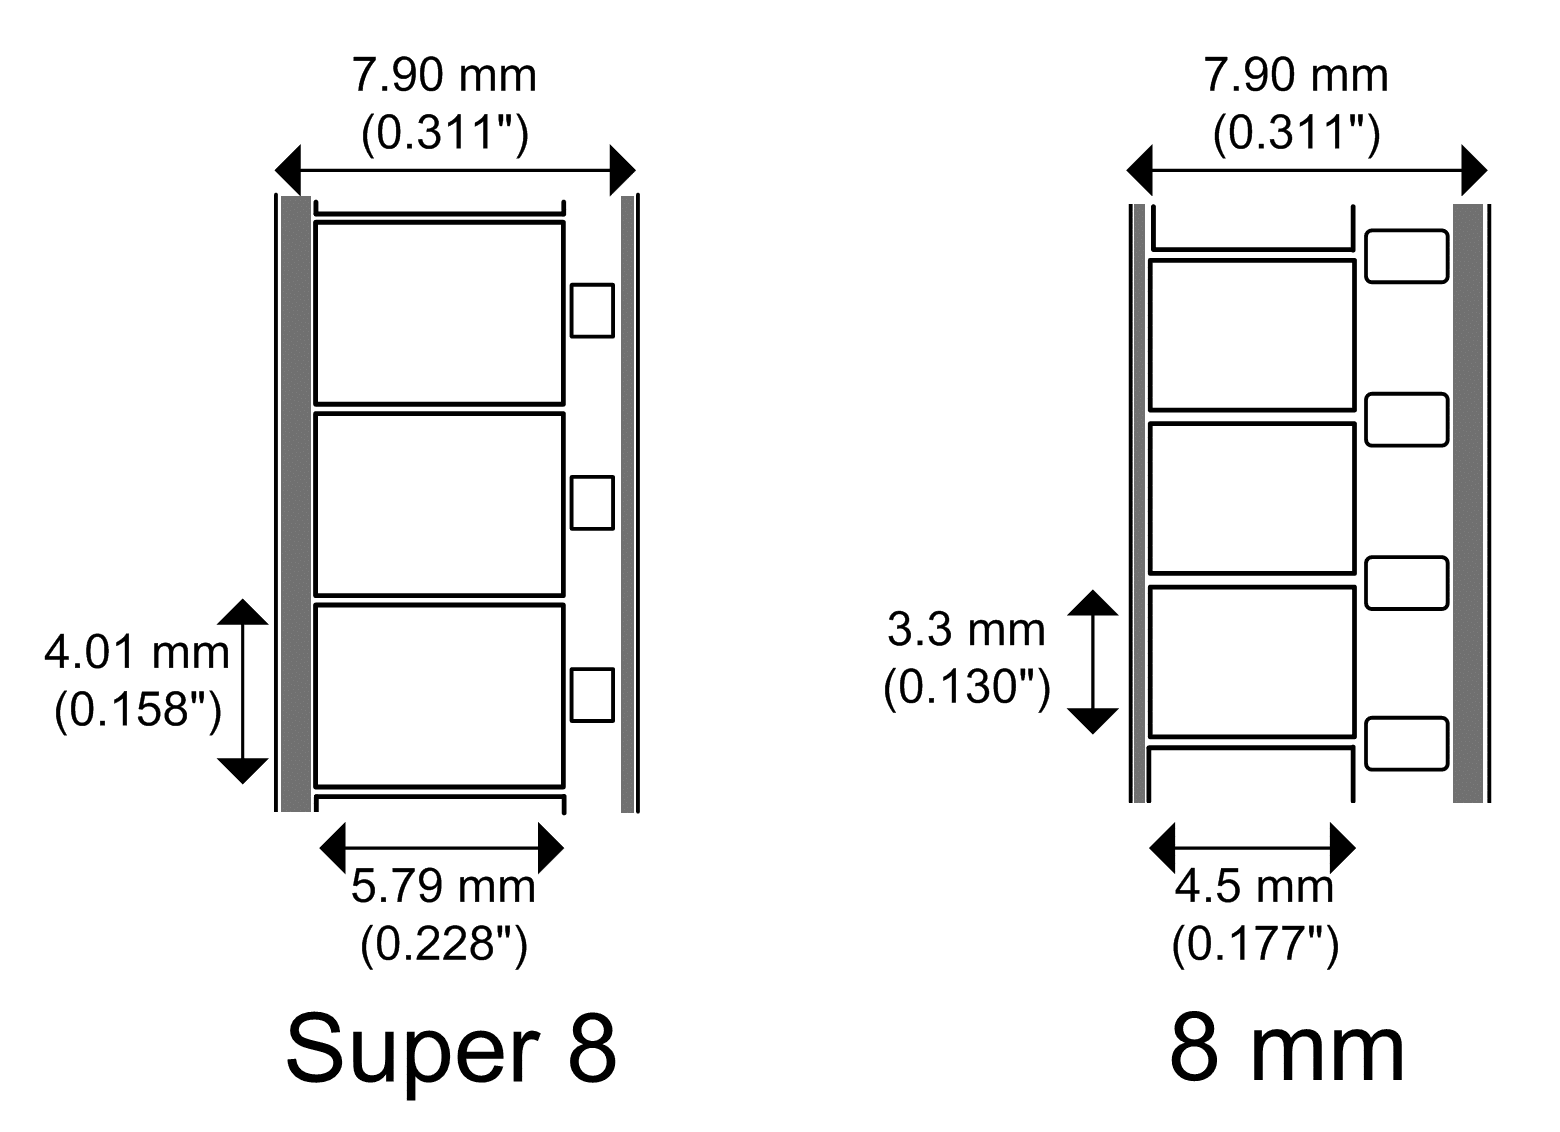 8mm film versus Super 8mm film